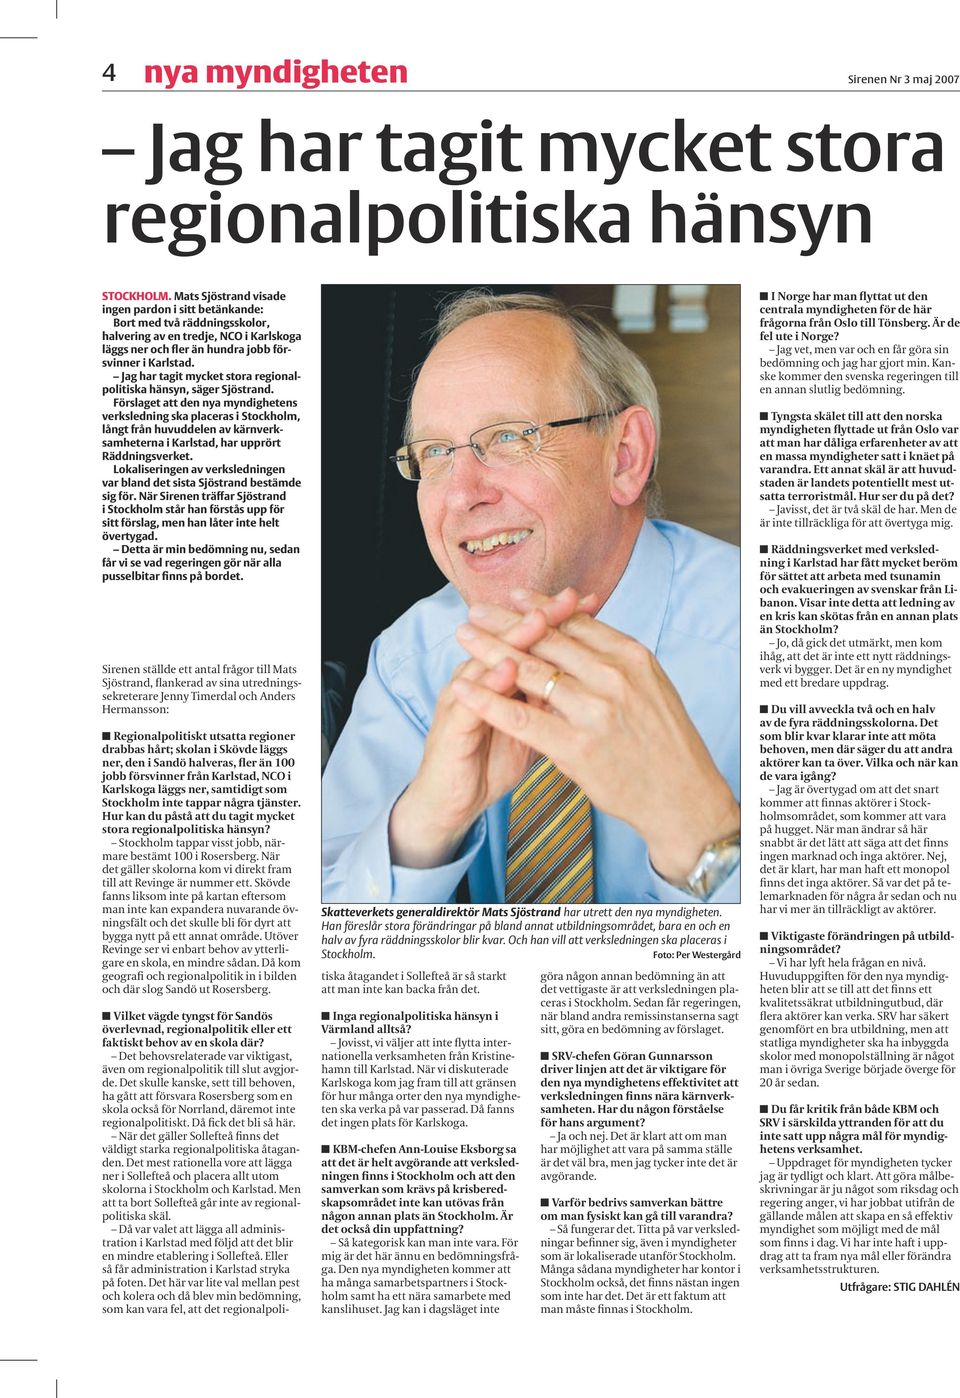 Jag har tagit mycket stora regionalpolitiska hänsyn, säger Sjöstrand.